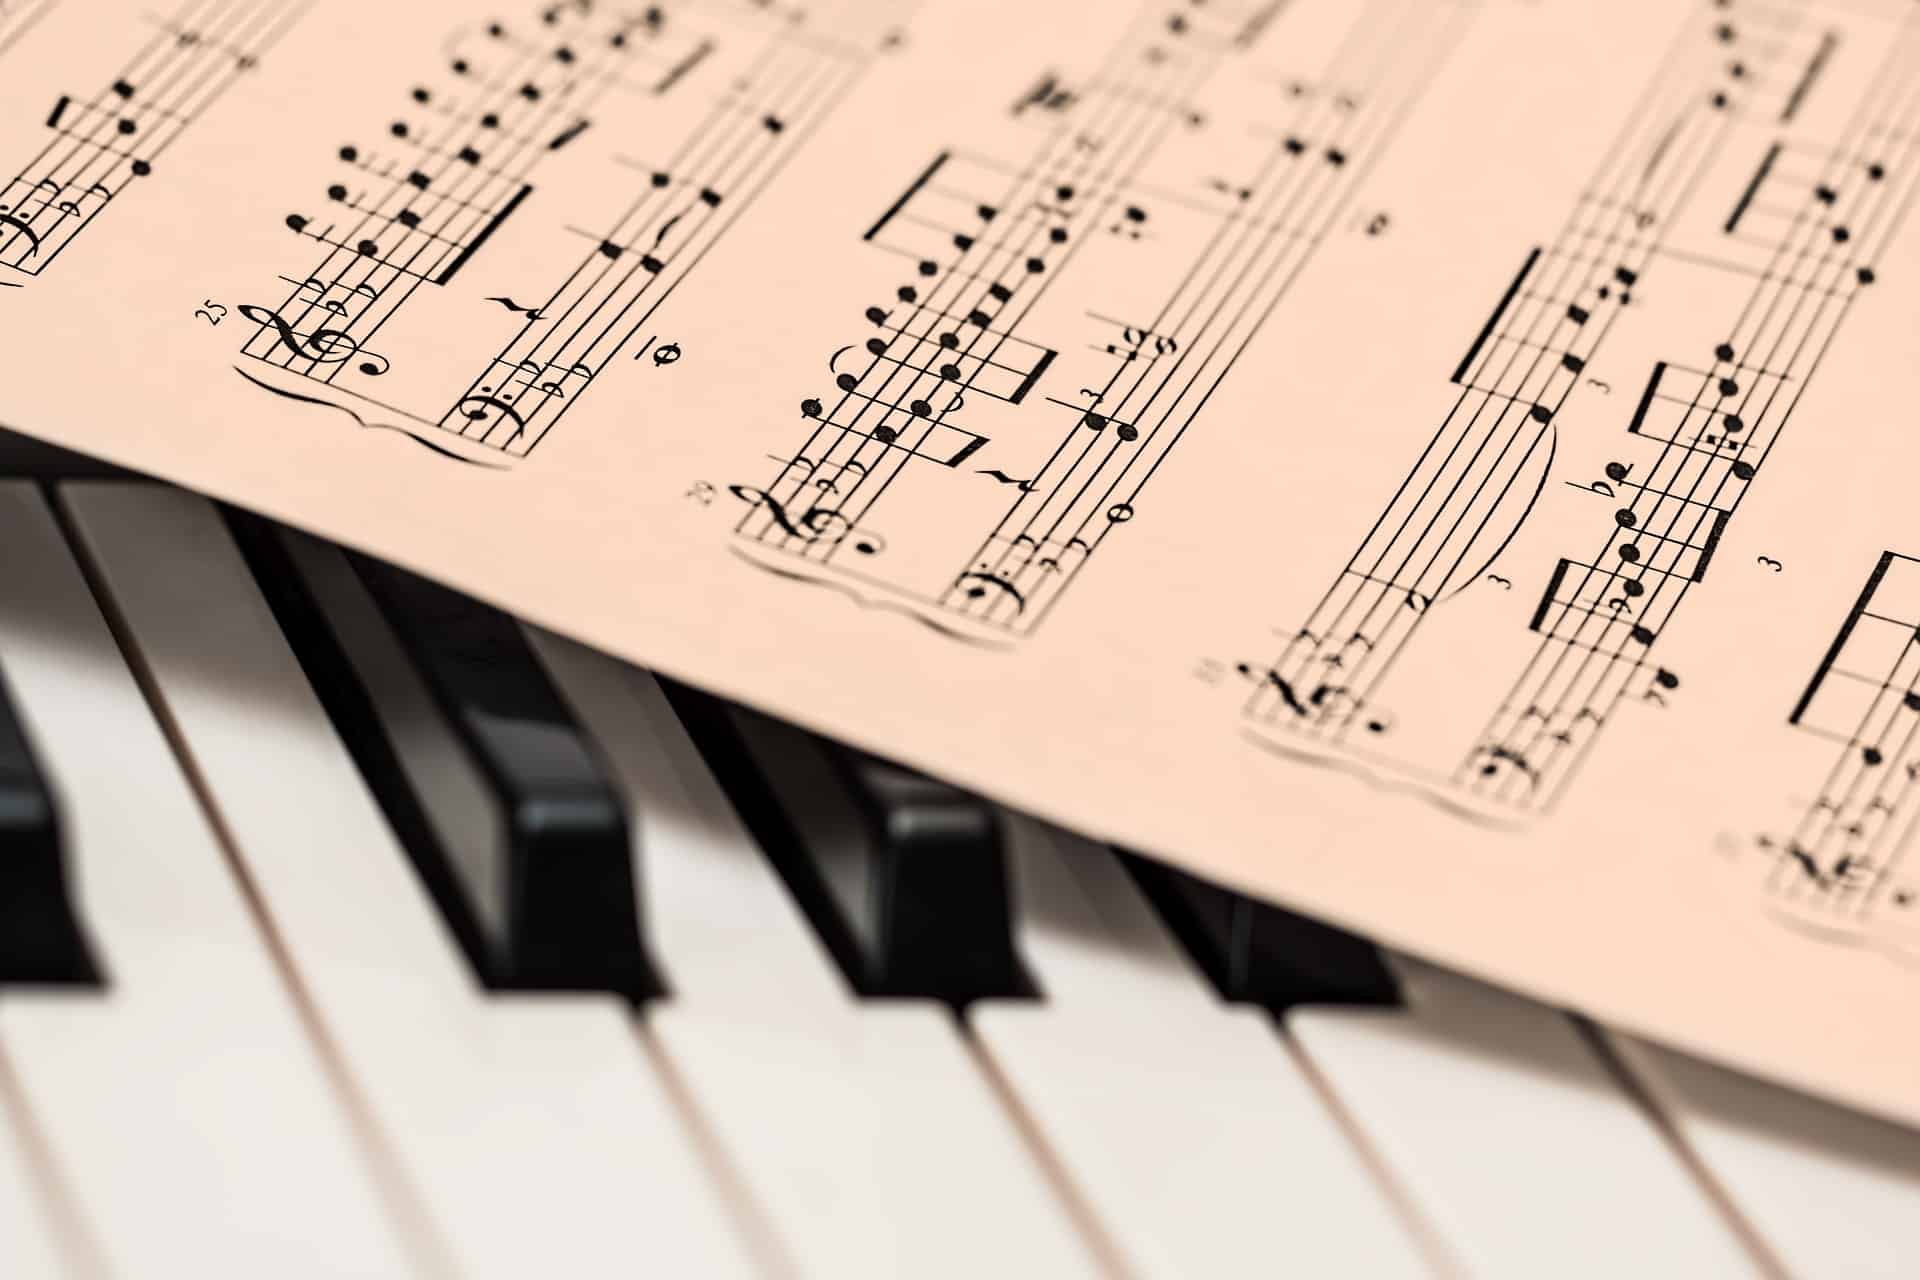 Belles Musiques, le festival classique de Claix, propose quatre jours autour de la musique, avec des concerts programmés du 23 au 26 mars 2023. © Steve Buissinne (Pixabay)